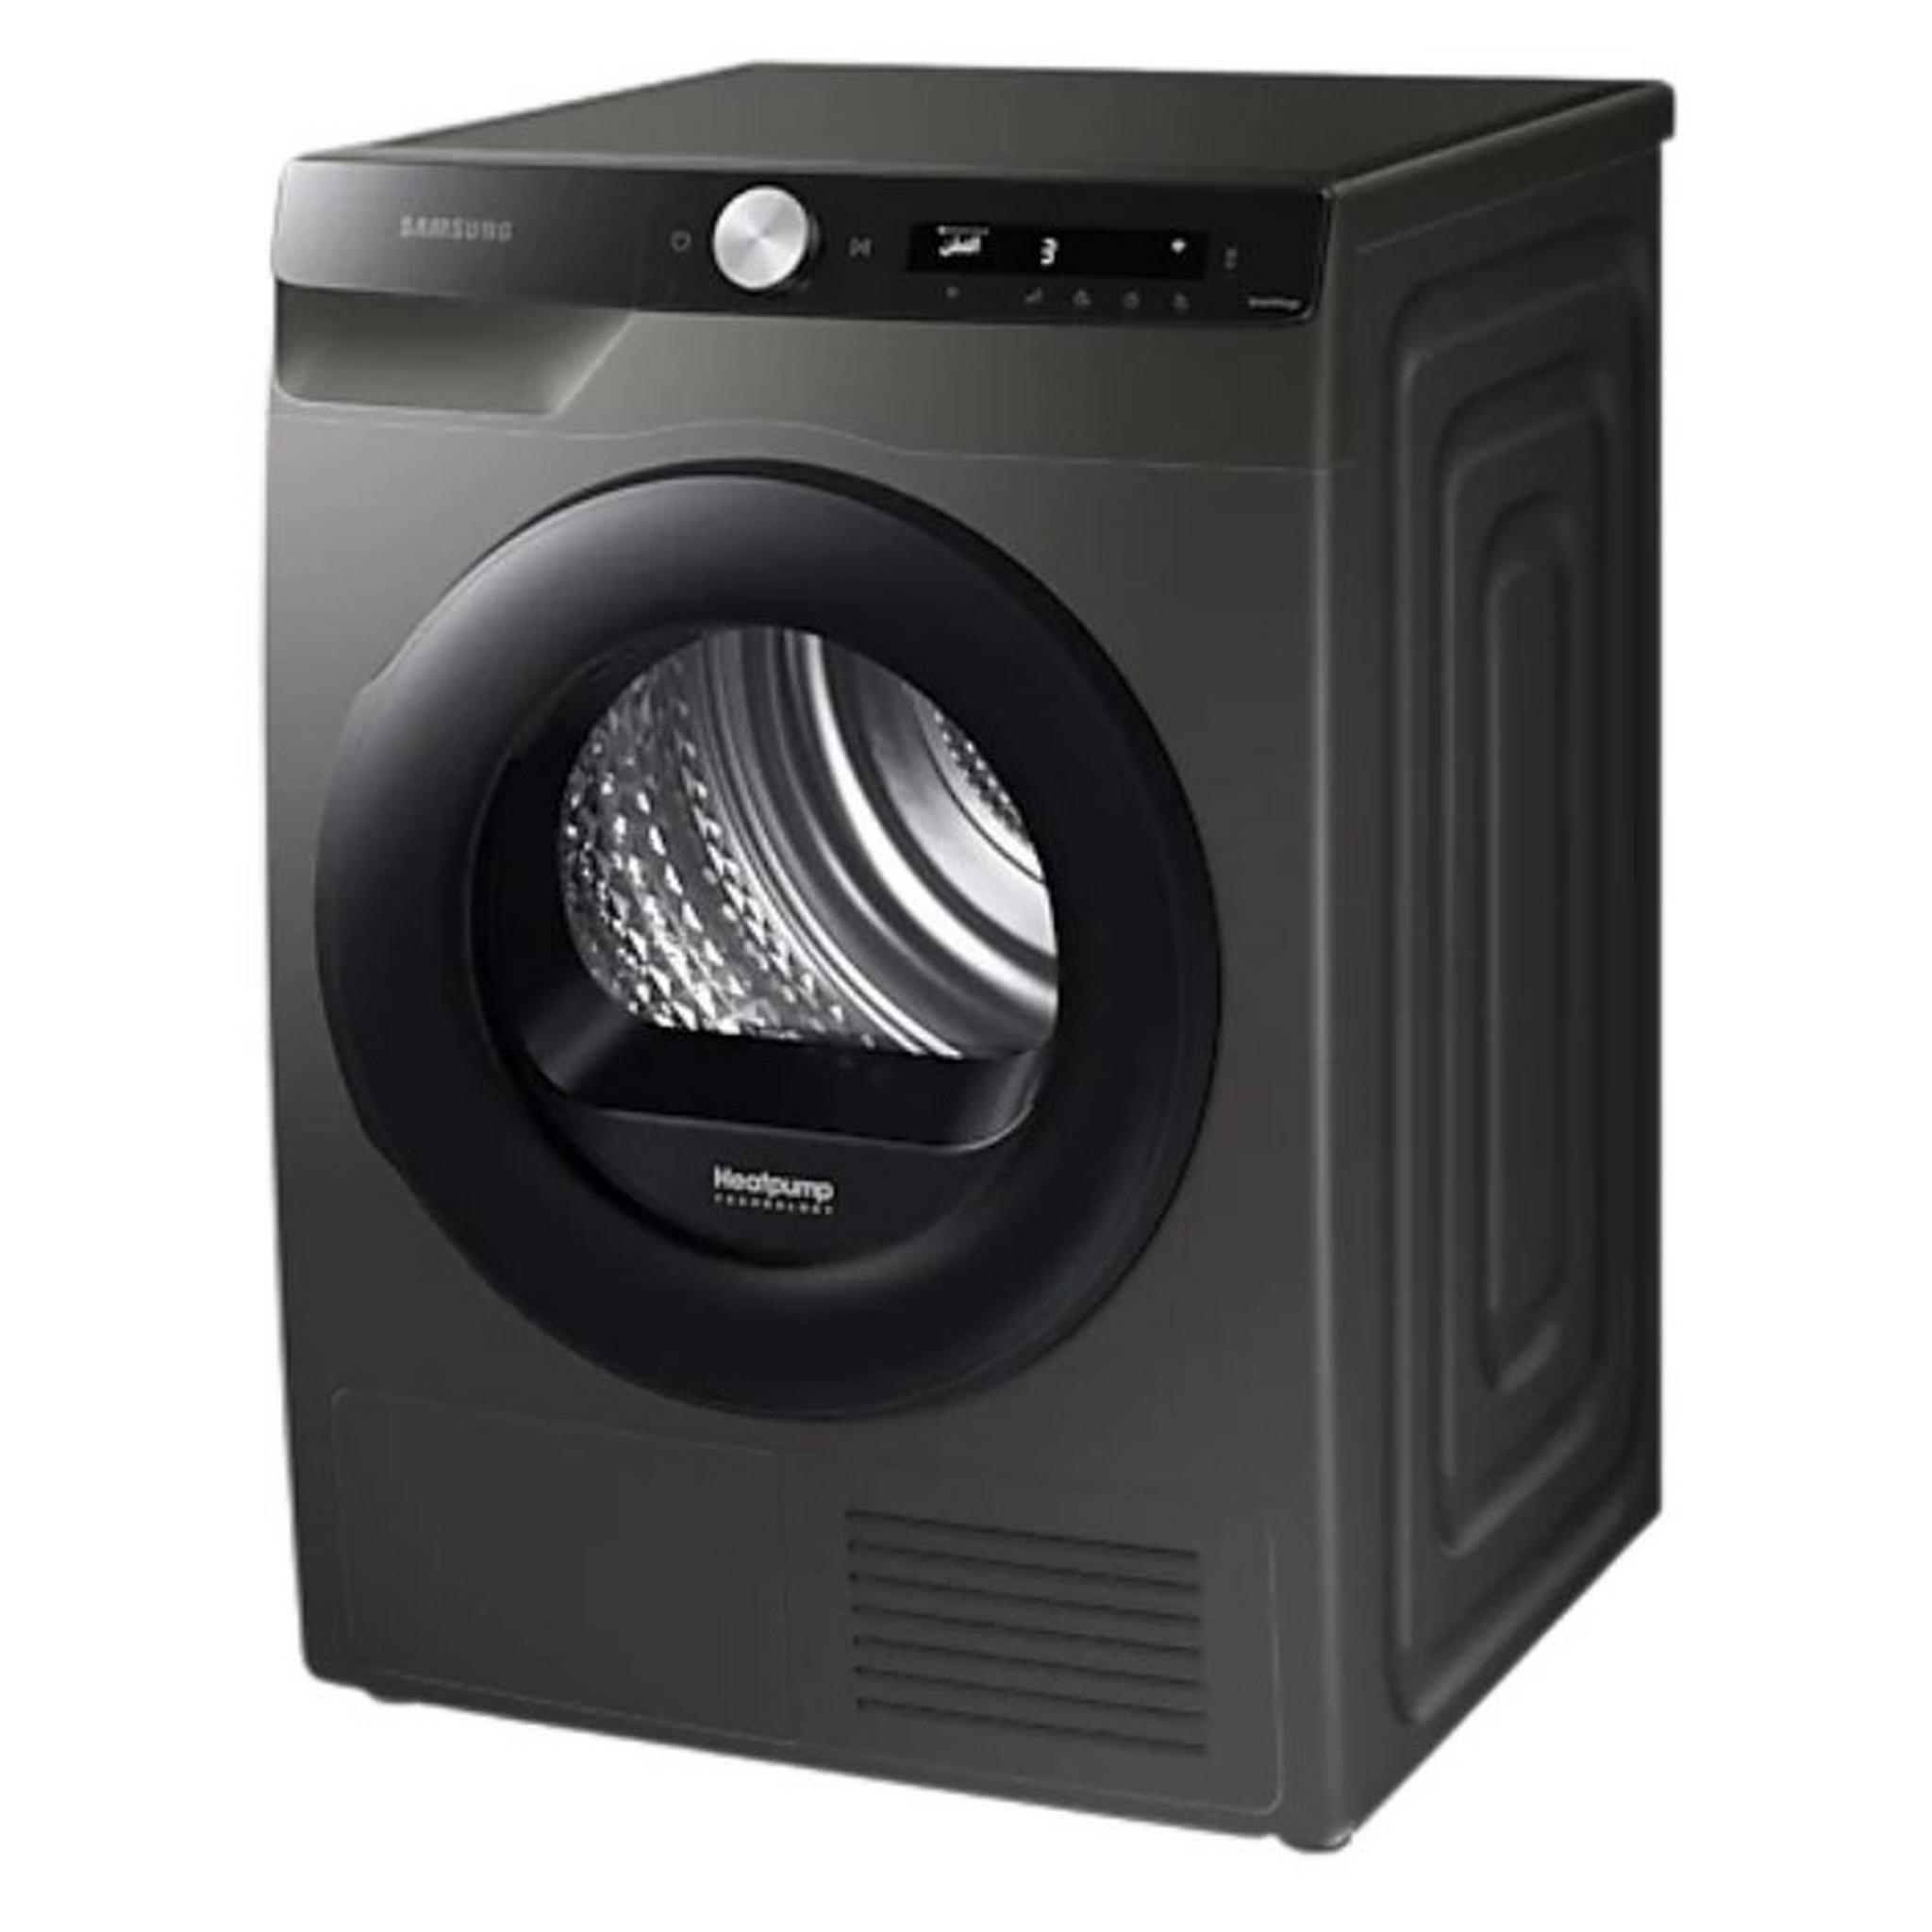 Samsung 9KG Heat Pump Condenser Dryer (DV90T5240AX)